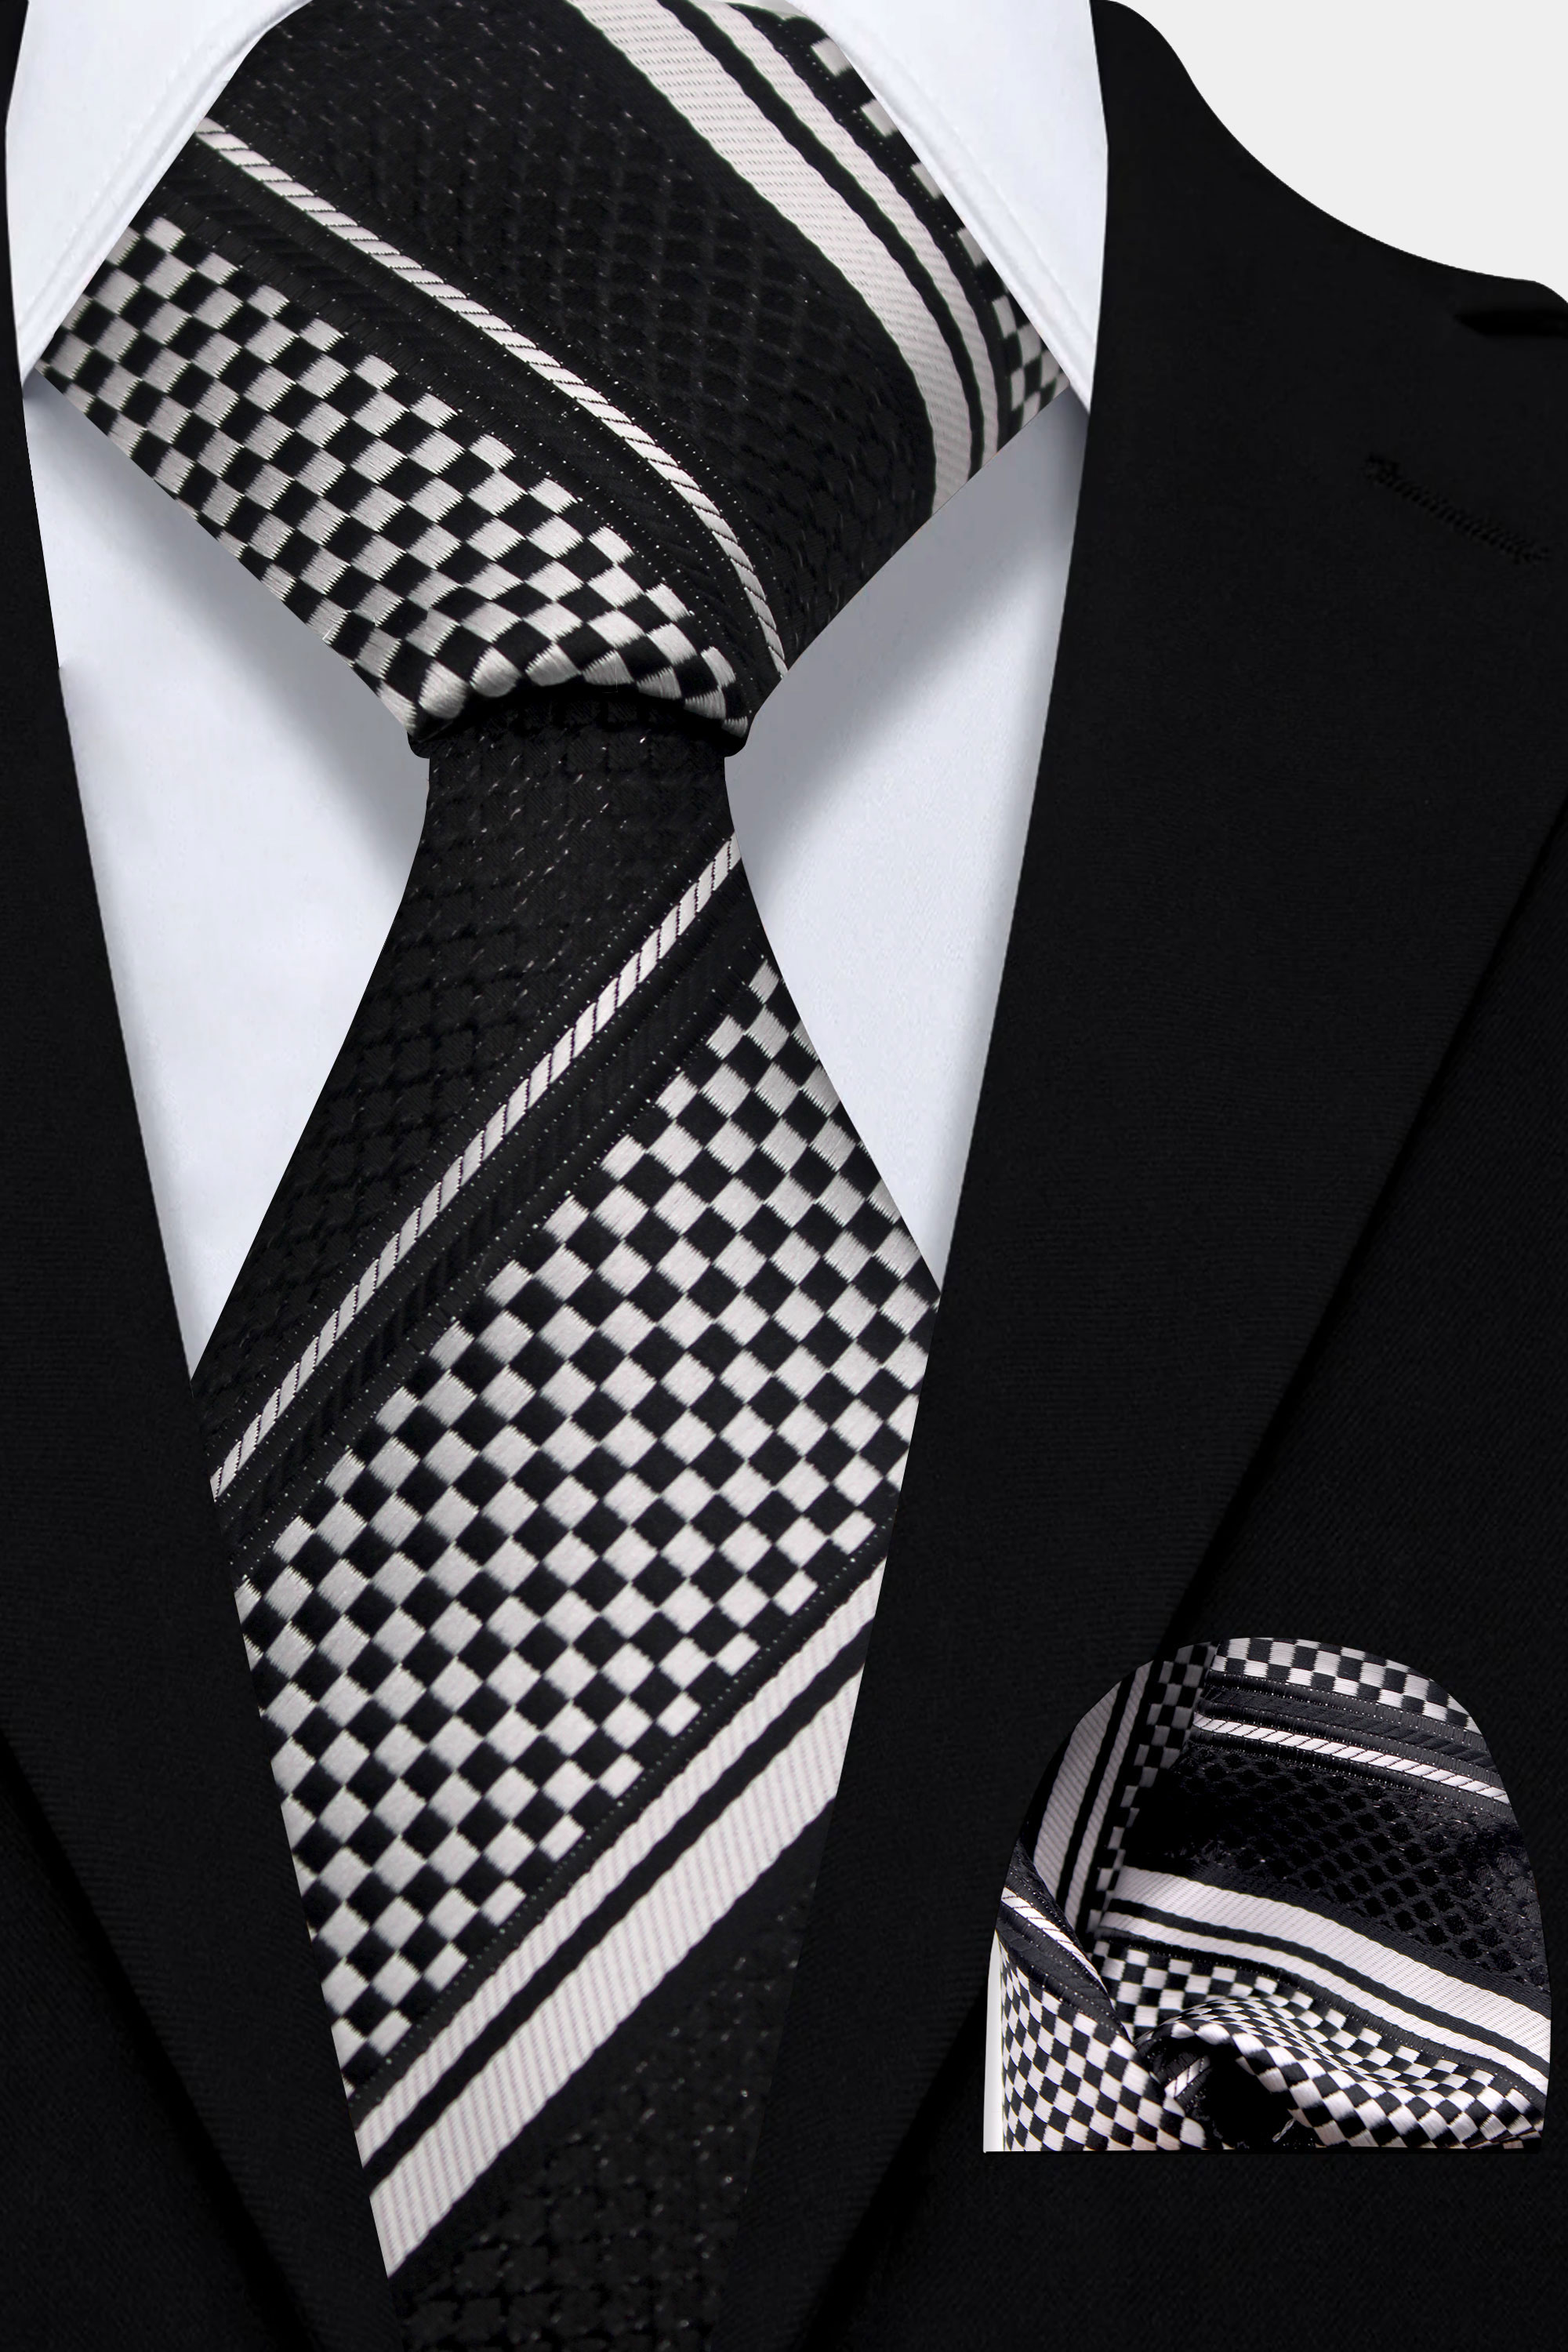 Men�'s Grey Striped Ties